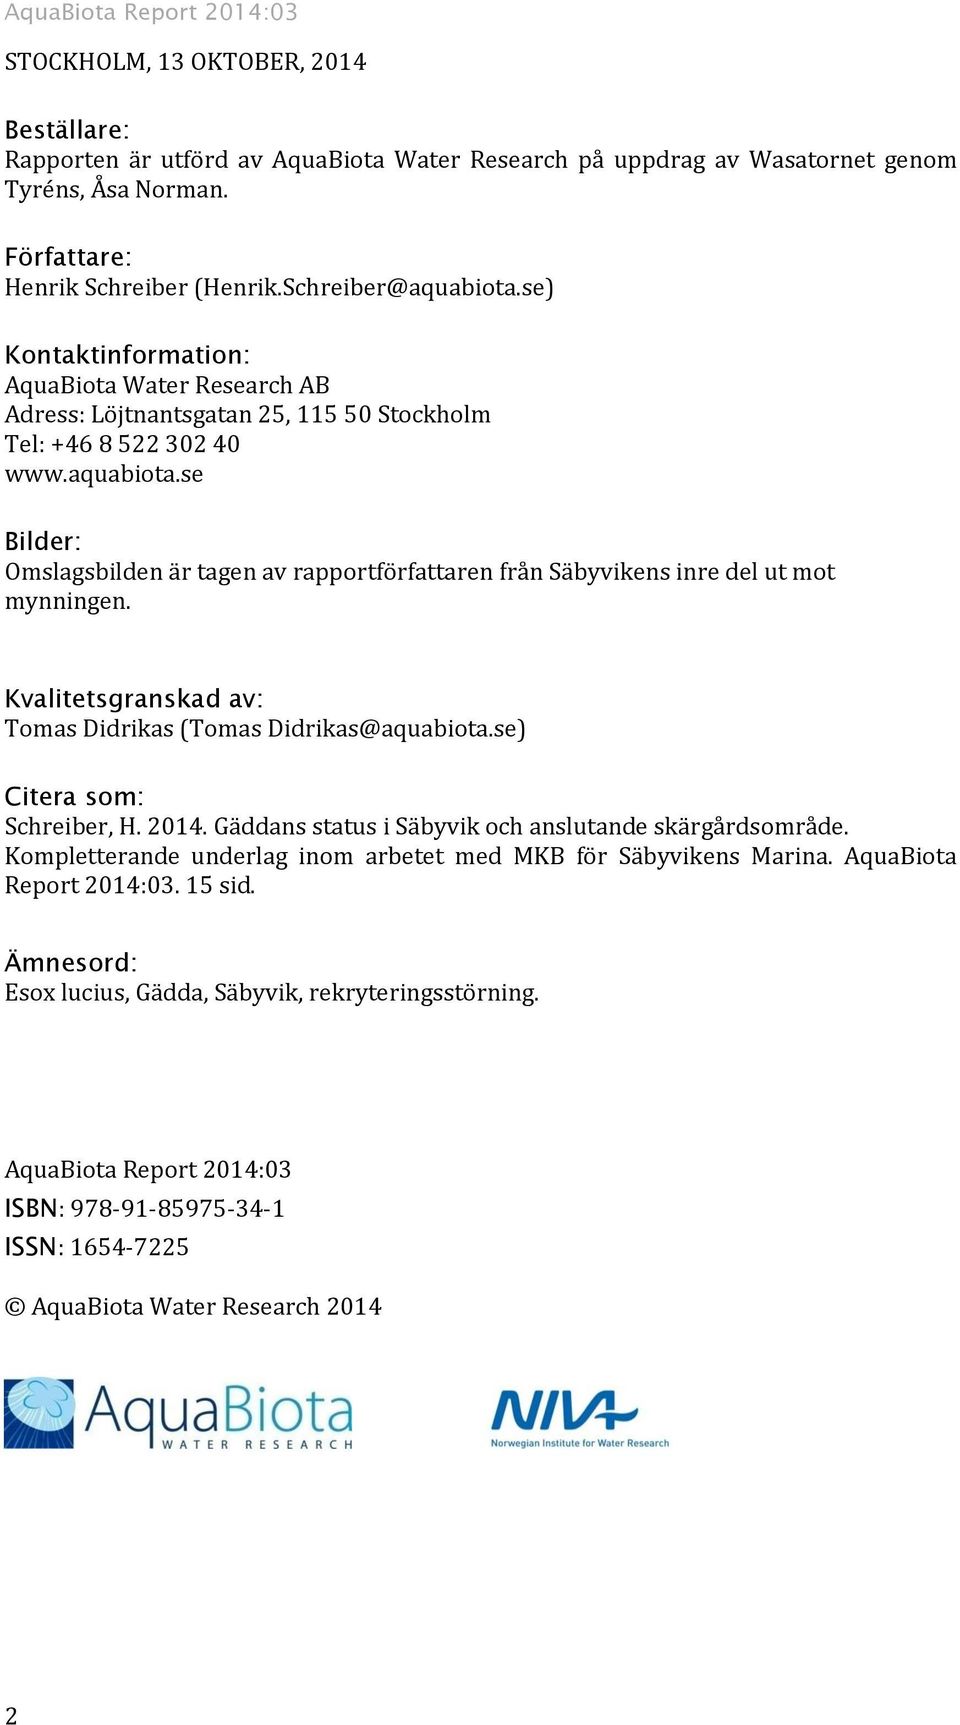 Kvalitetsgranskad av: Tomas Didrikas (Tomas Didrikas@aquabiota.se) Citera som: Schreiber, H. 2014. Gäddans status i Säbyvik och anslutande skärgårdsområde.